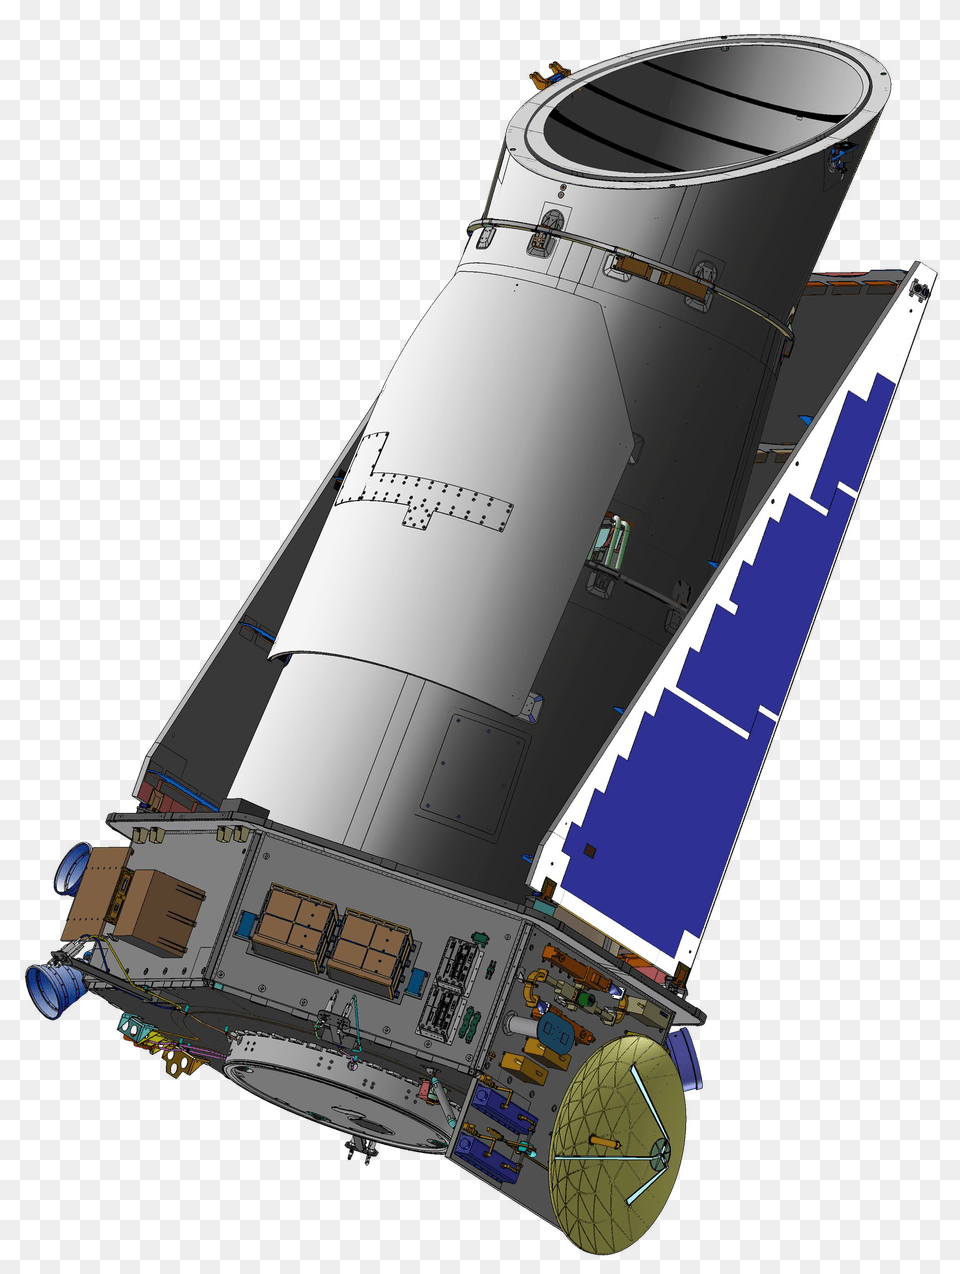 Download Hd Kepler Space Telescope Kepler Space Telescope, Cad Diagram, Diagram, Ammunition, Missile Png Image